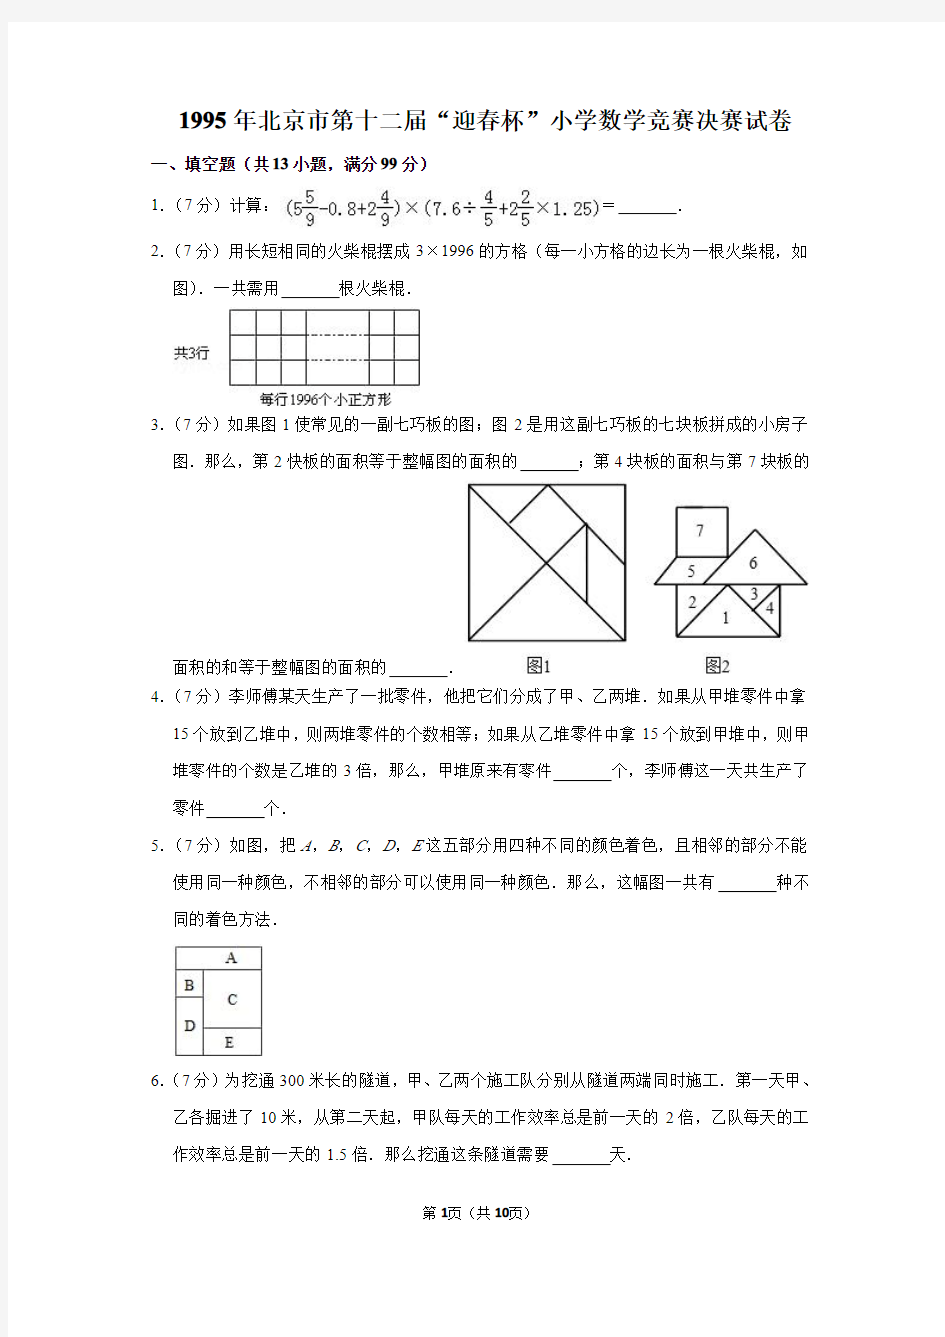 2020年北京市第十二届“春笋杯”小学数学竞赛决赛试卷